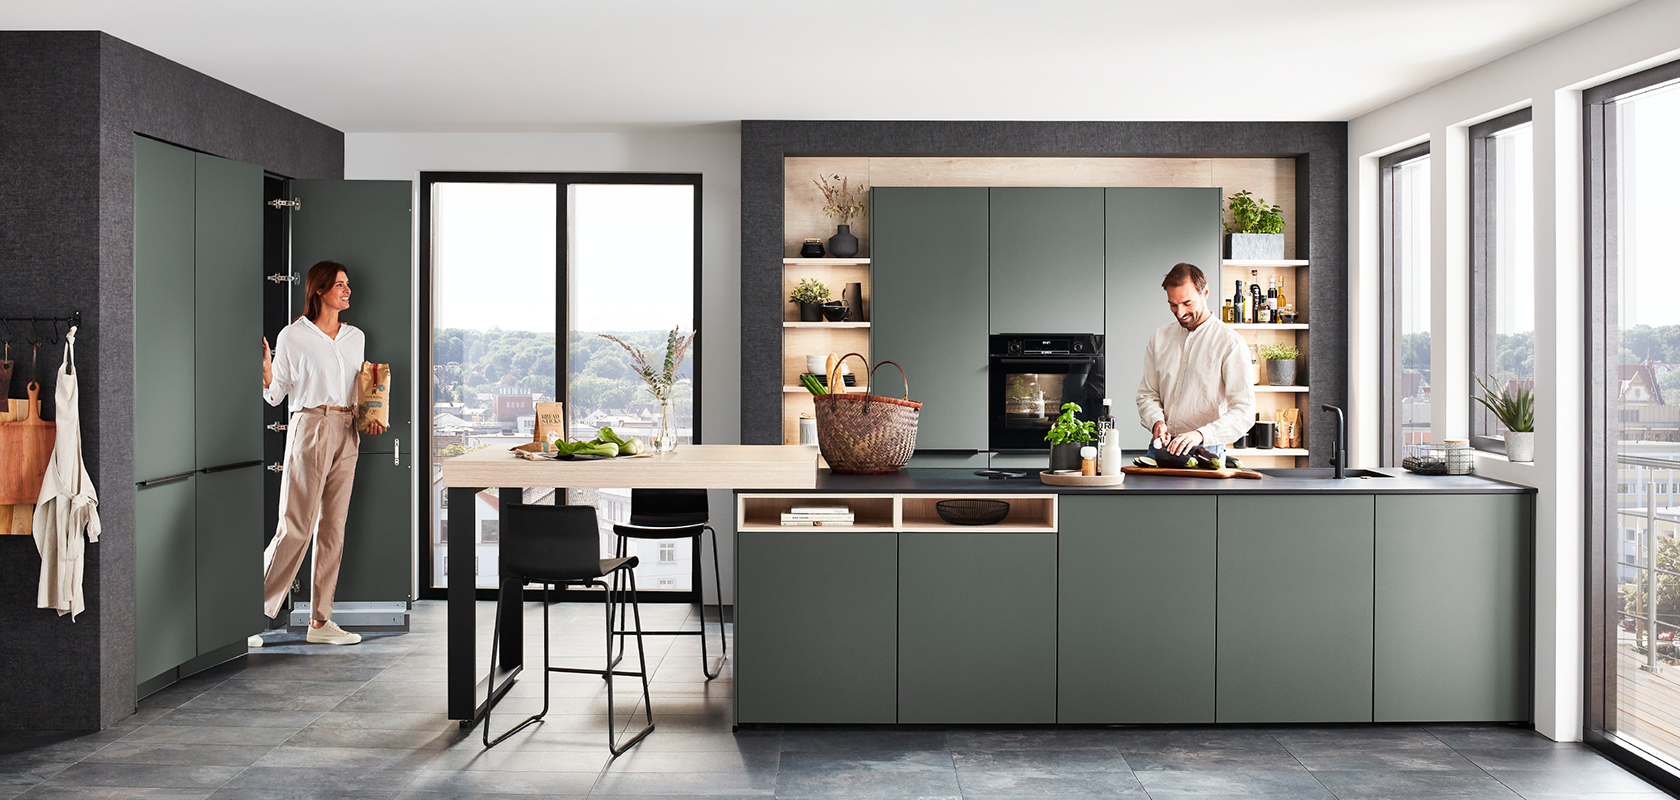 Design contemporaneo della cucina con eleganti armadi verdi, un'isola centrale con posti a sedere e elettrodomestici moderni, valorizzato dalla luce naturale proveniente dalle ampie finestre.